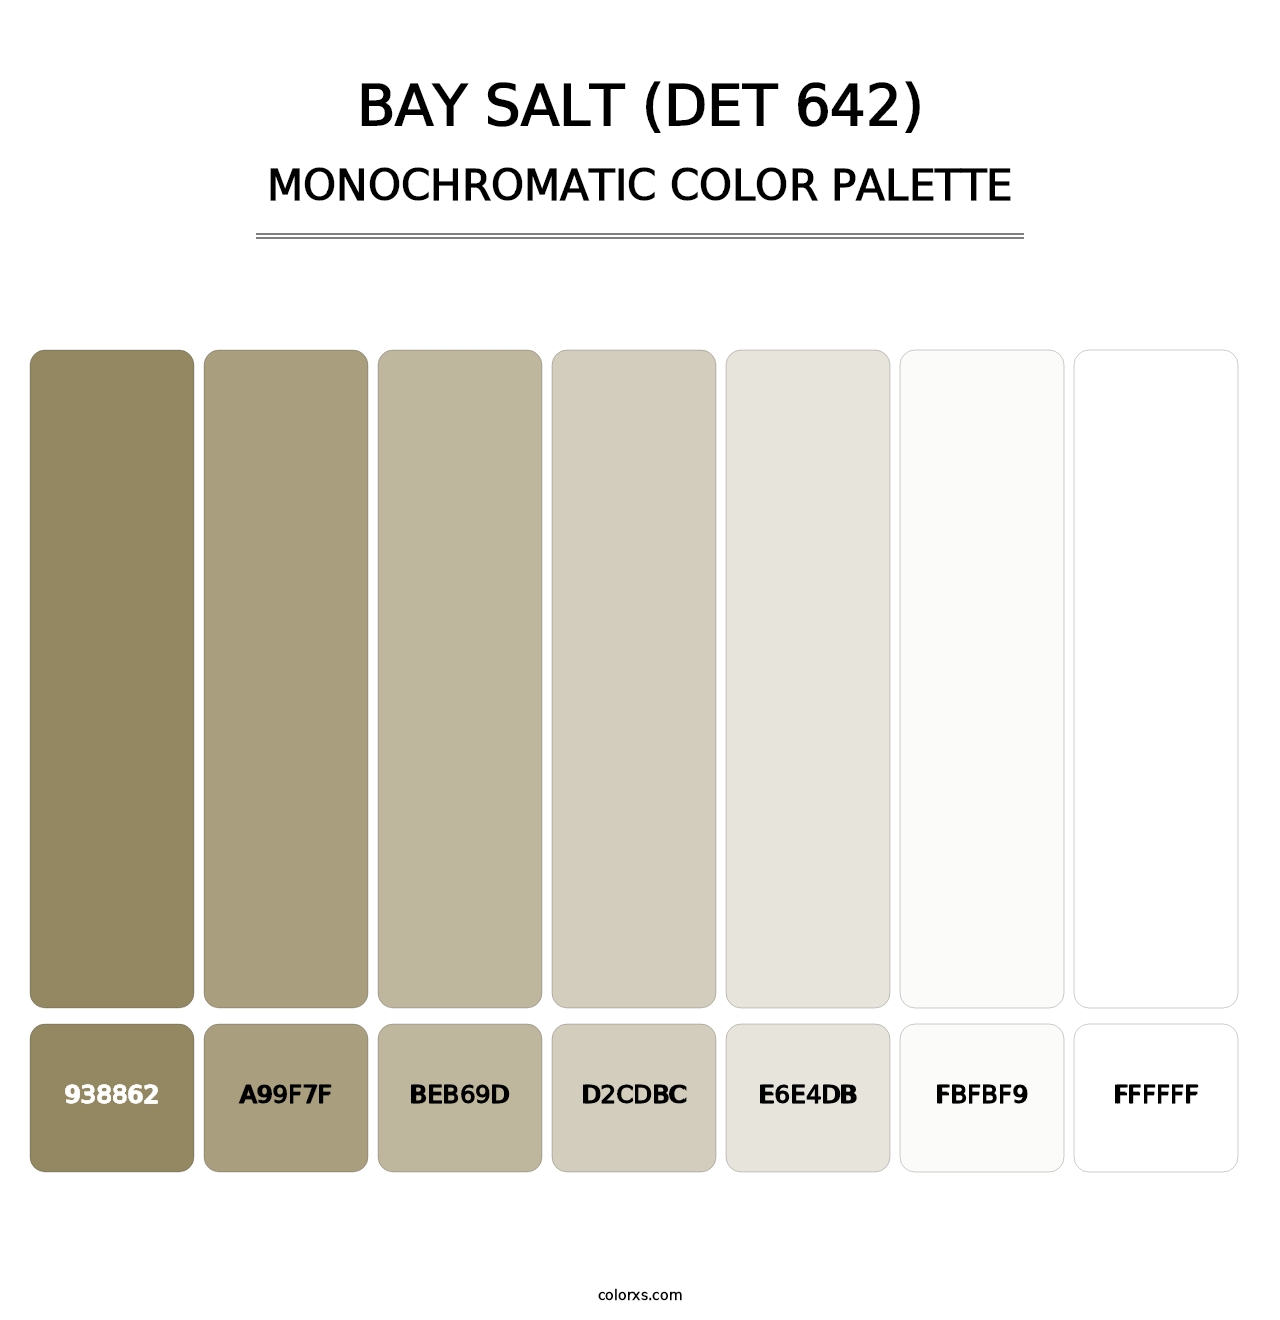 Bay Salt (DET 642) - Monochromatic Color Palette